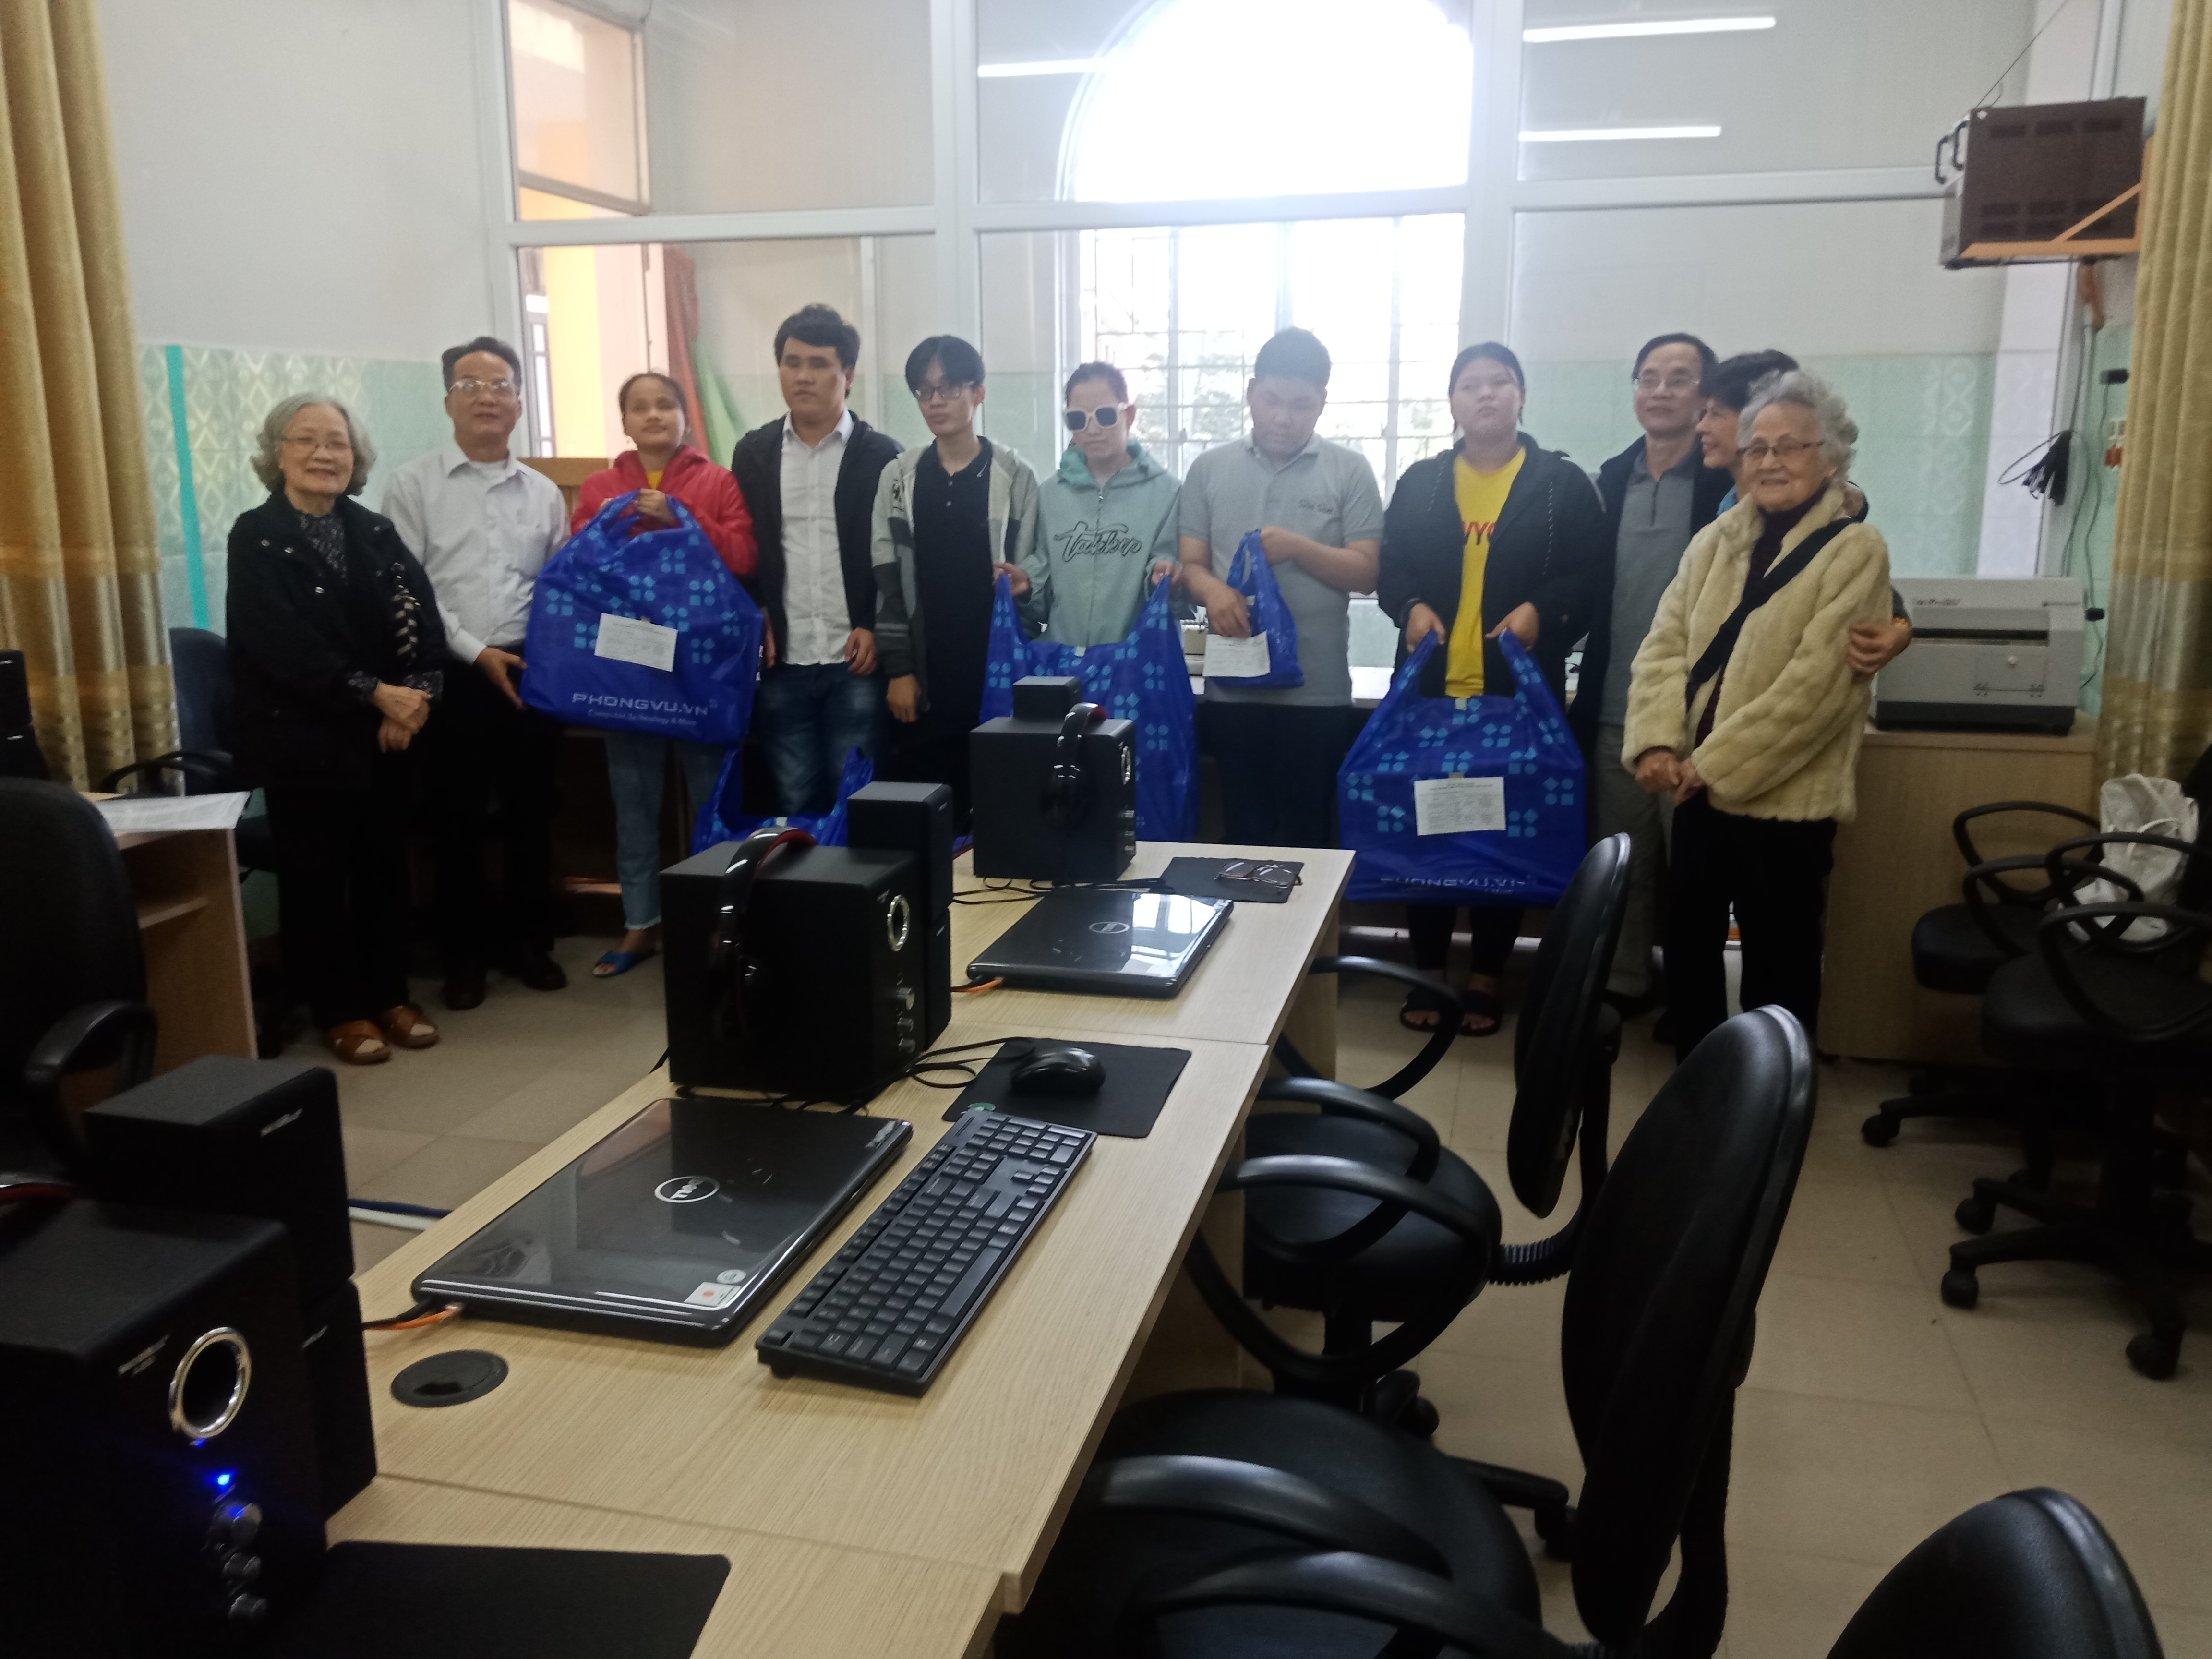 Hình ảnh: Hội Người mù tỉnh Thừa Thiên Huế tổ chức trao học bổng và thiết bị CNTT  cho học sinh và sinh viên mù